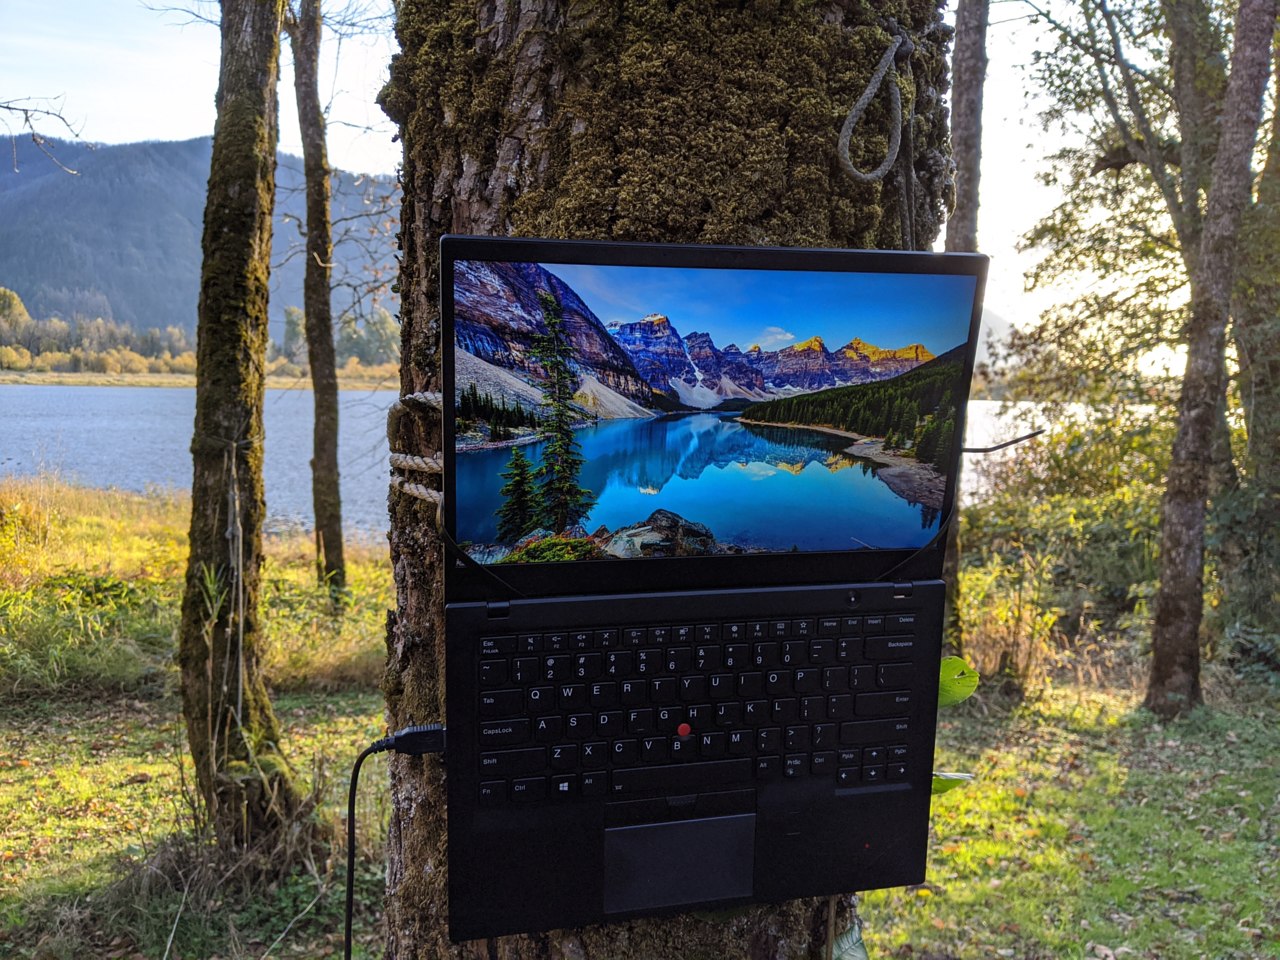 ThinkPad X1 Carbon flat on tree